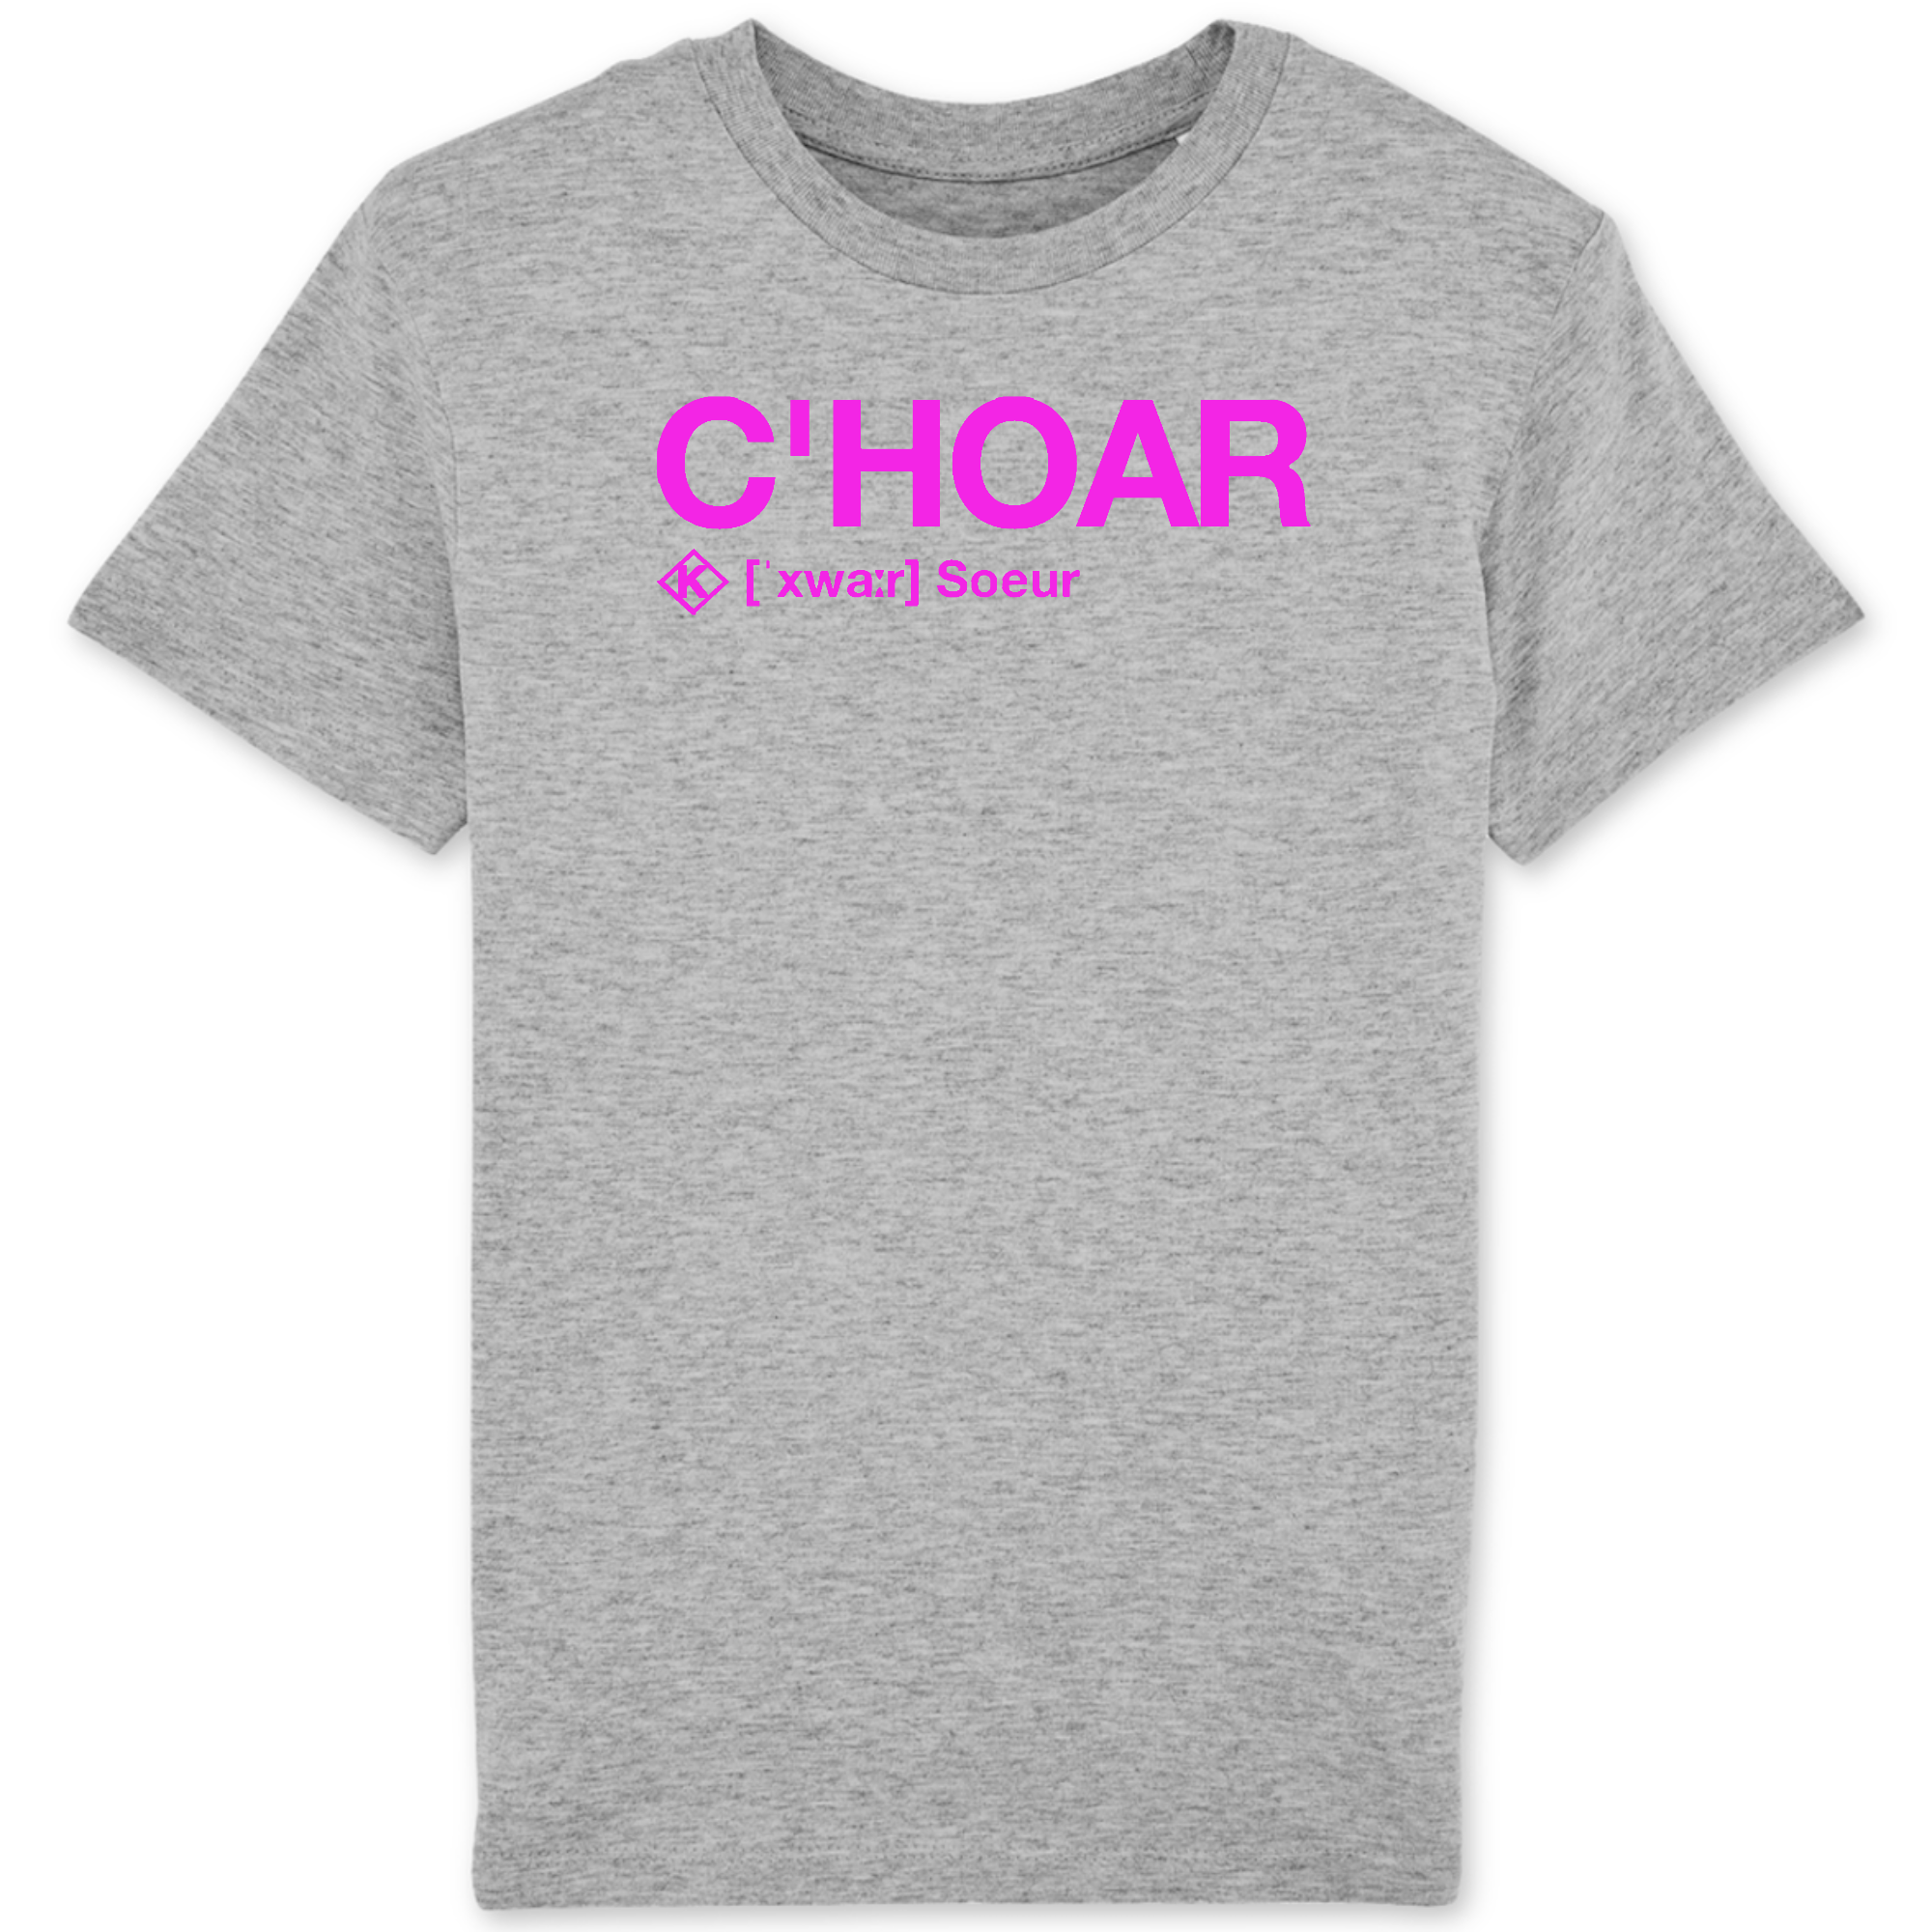 C'hoar T-shirt (Soeur) - fushia